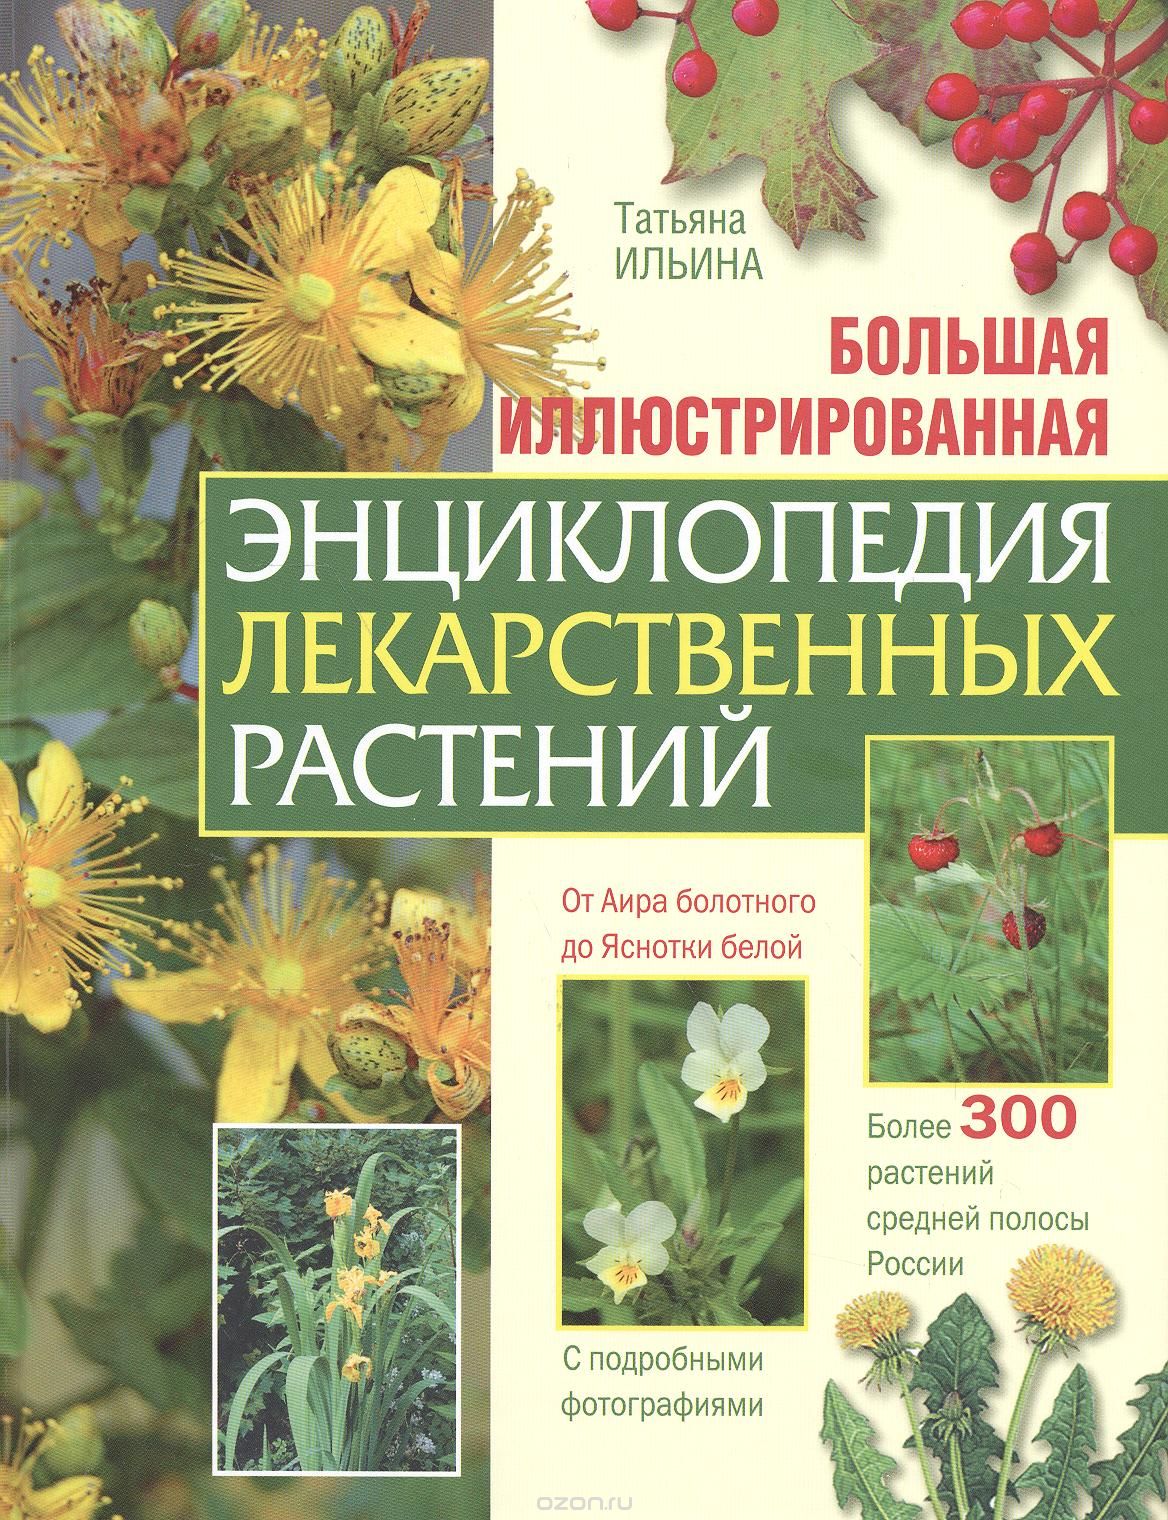 Скачать книгу "Большая иллюстрированная энциклопедия лекарственных растений, Т. А. Ильина"